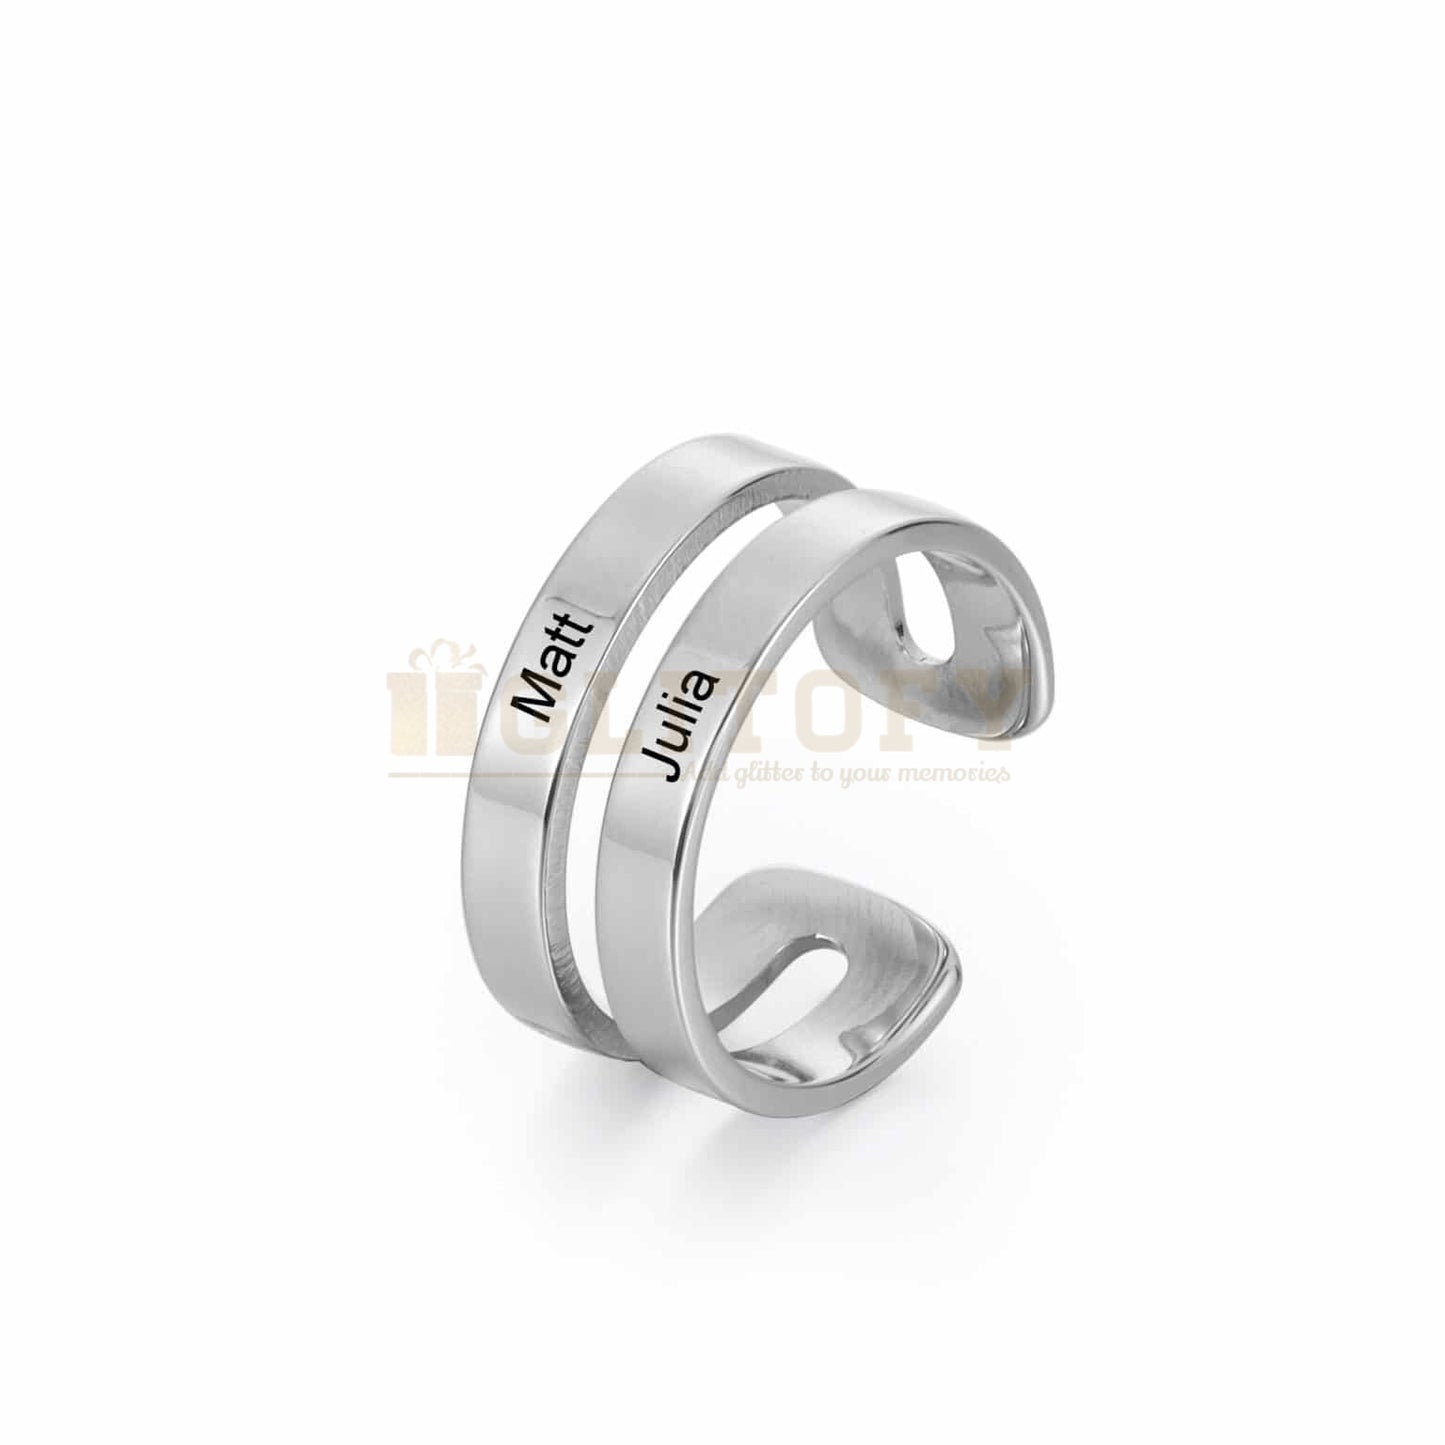 Couple Engraved Name Ring - adjustable - Glitofy